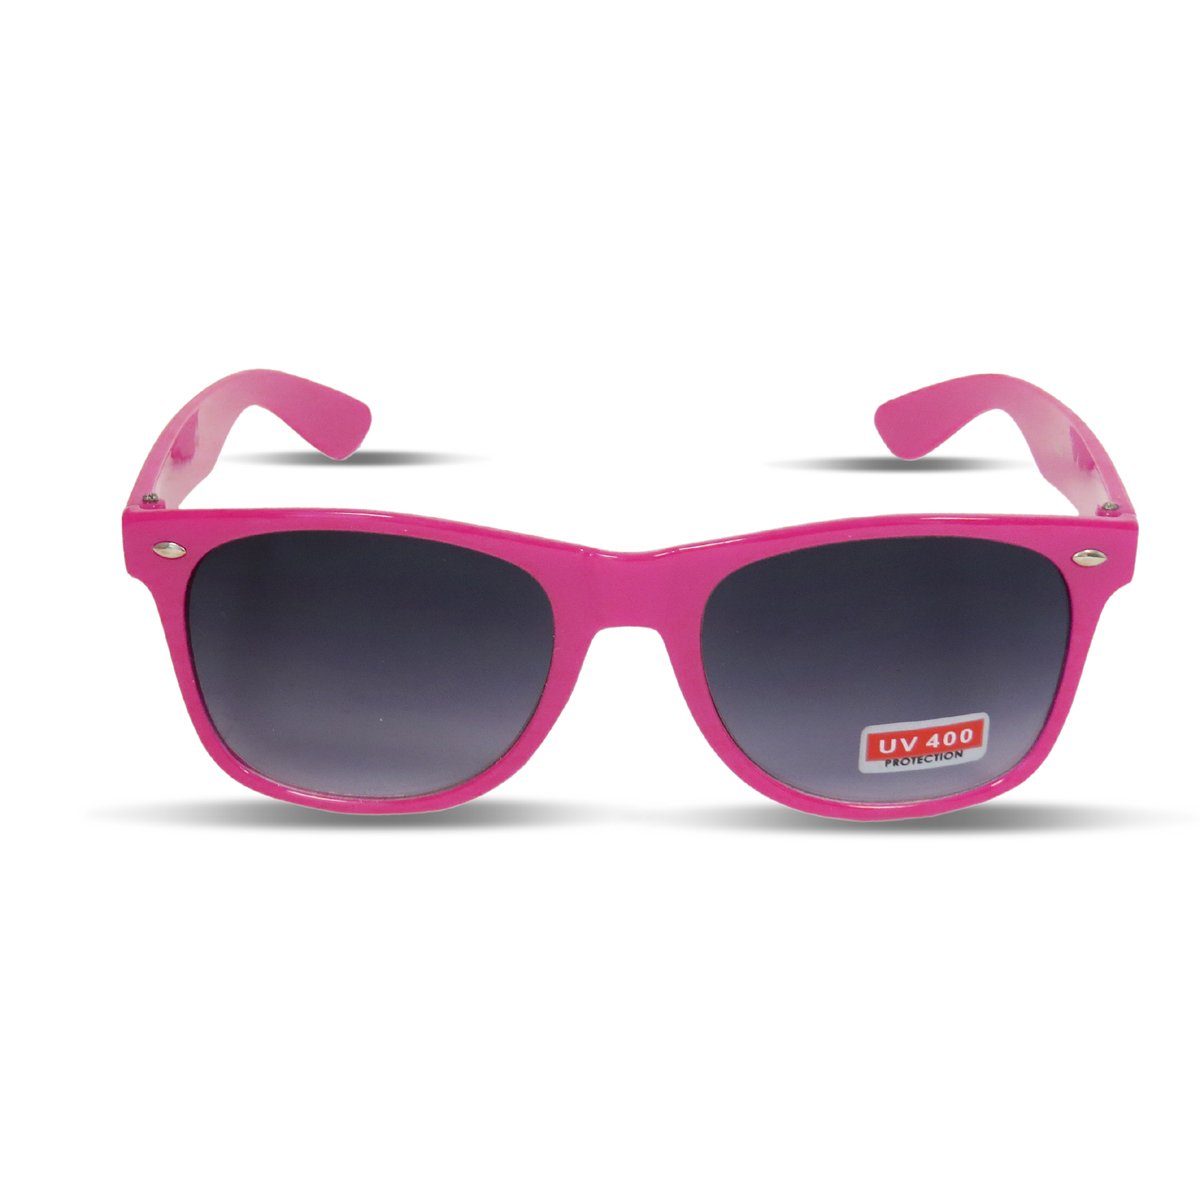 Sonia Originelli Sonnenbrille Sonnenbrille Brille Verspiegelt Party Klassik Onesize pink